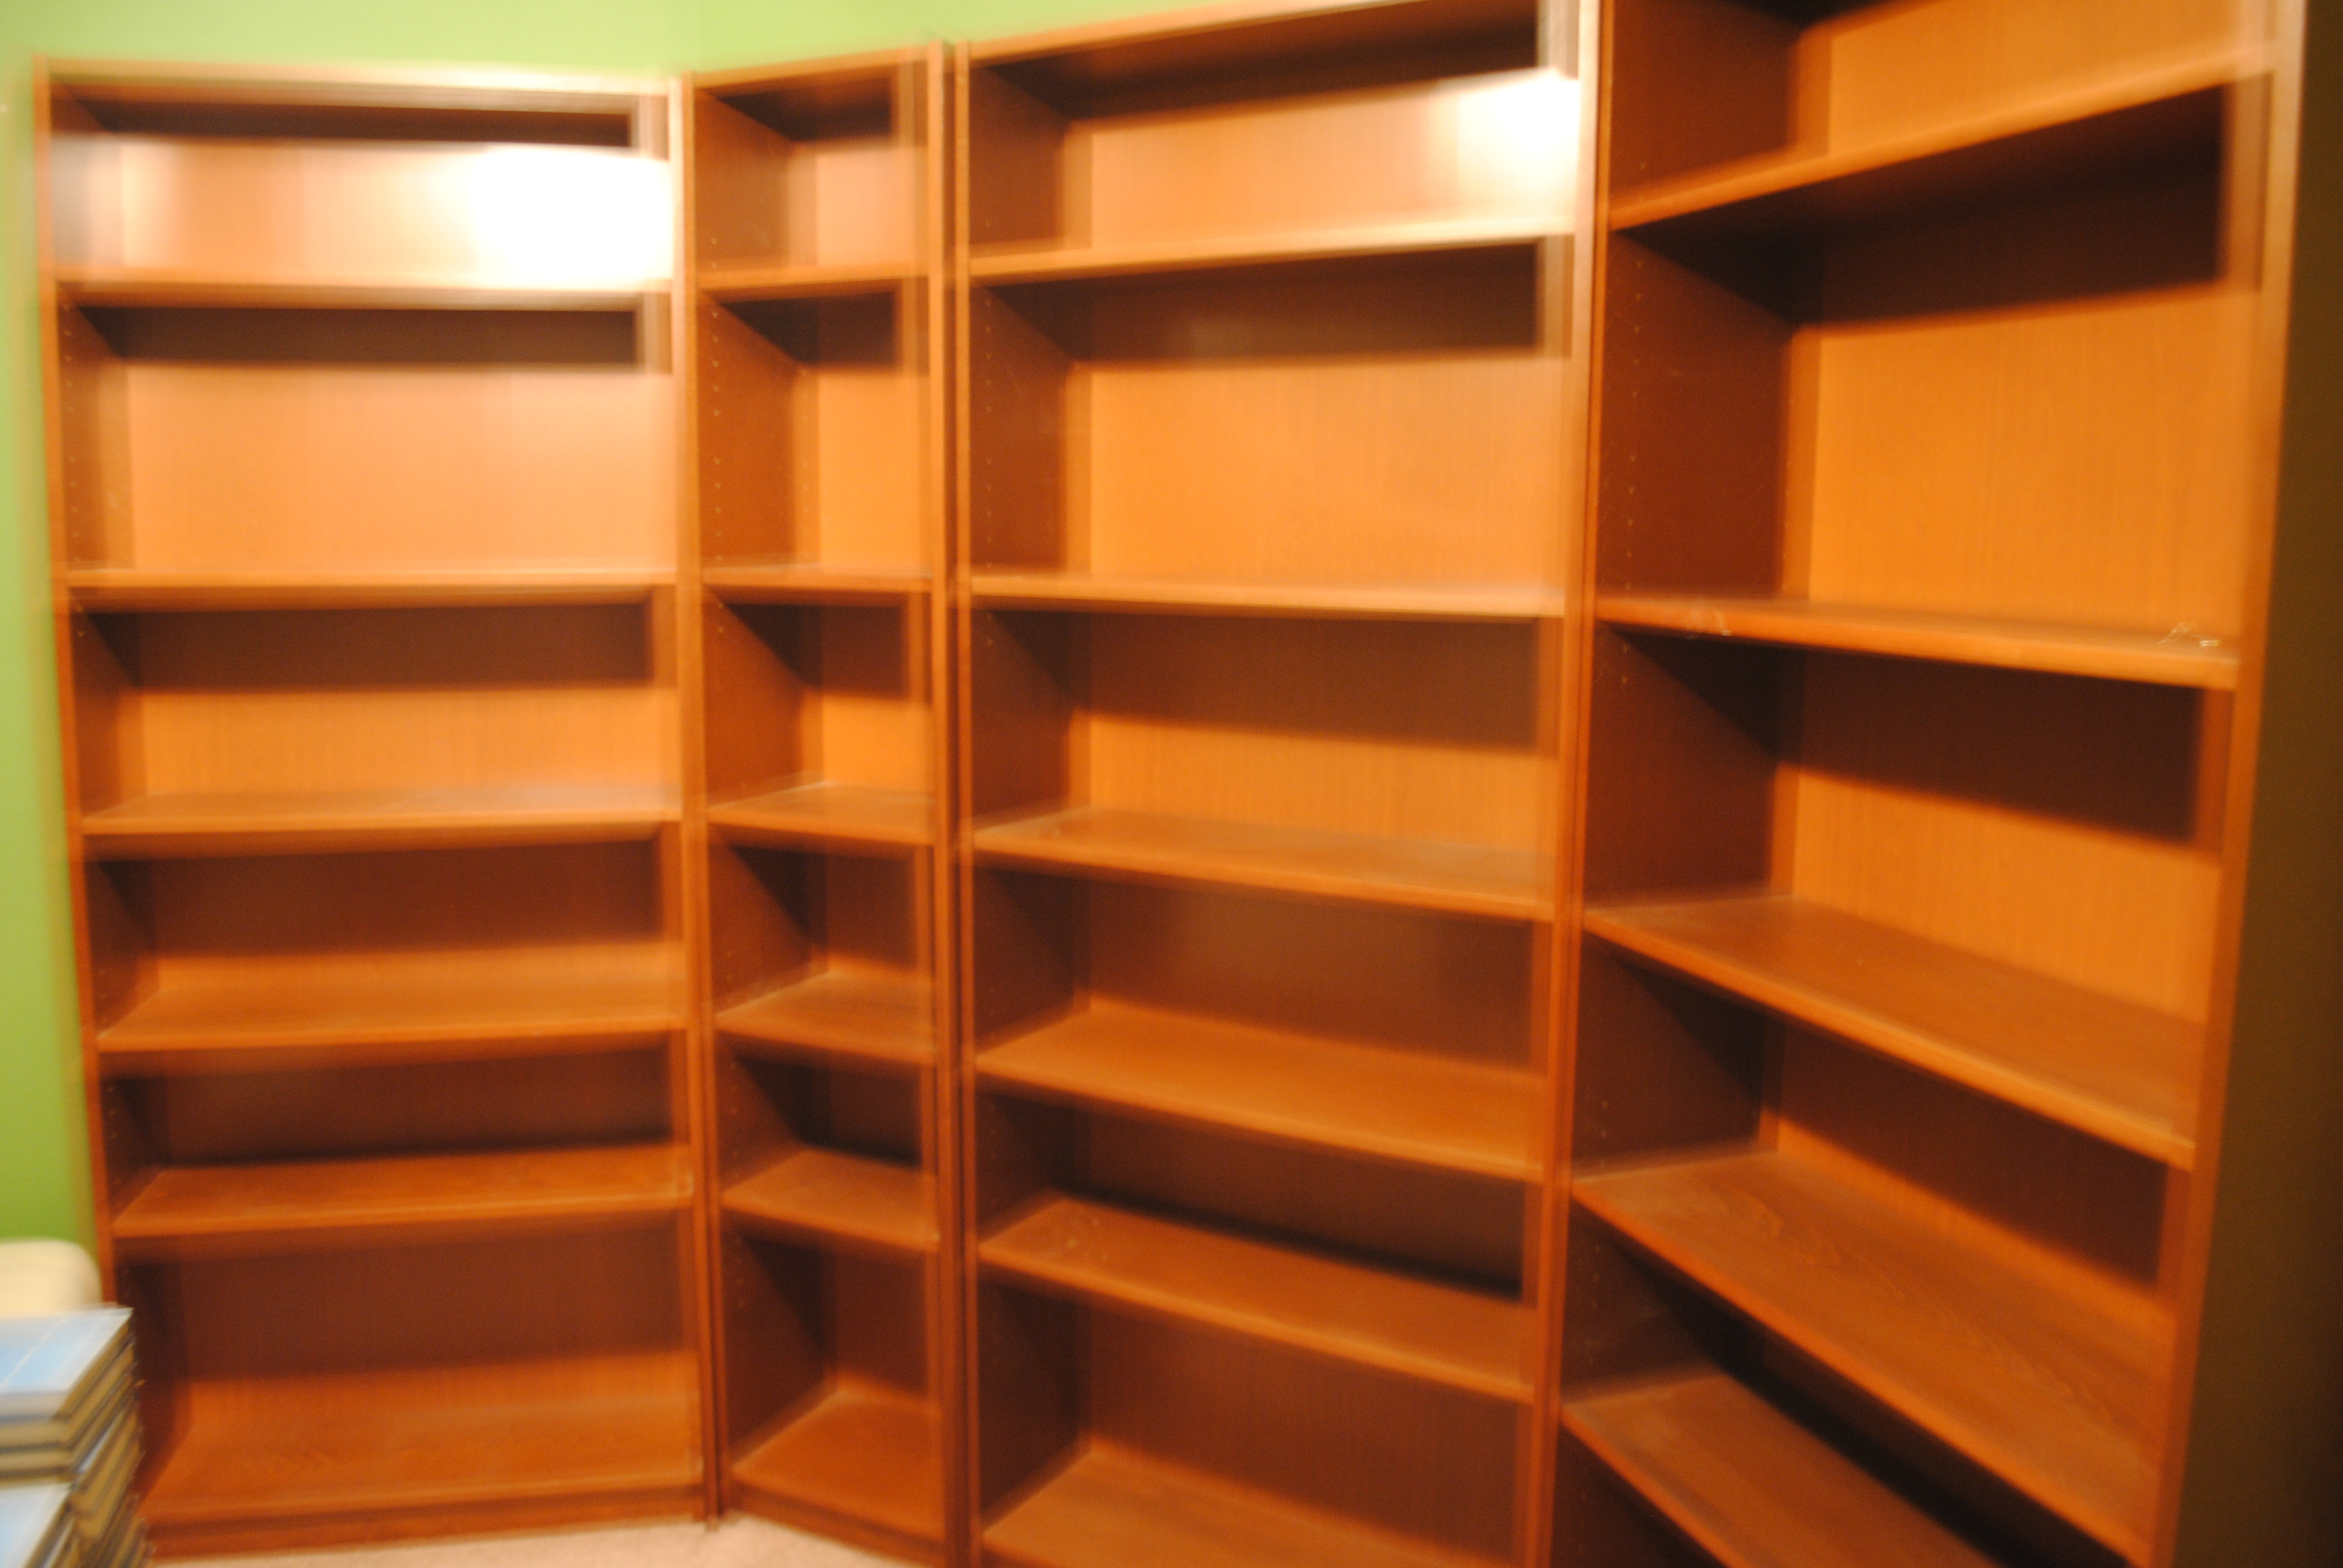 Empty Bookshelves The Short Bookshelf On